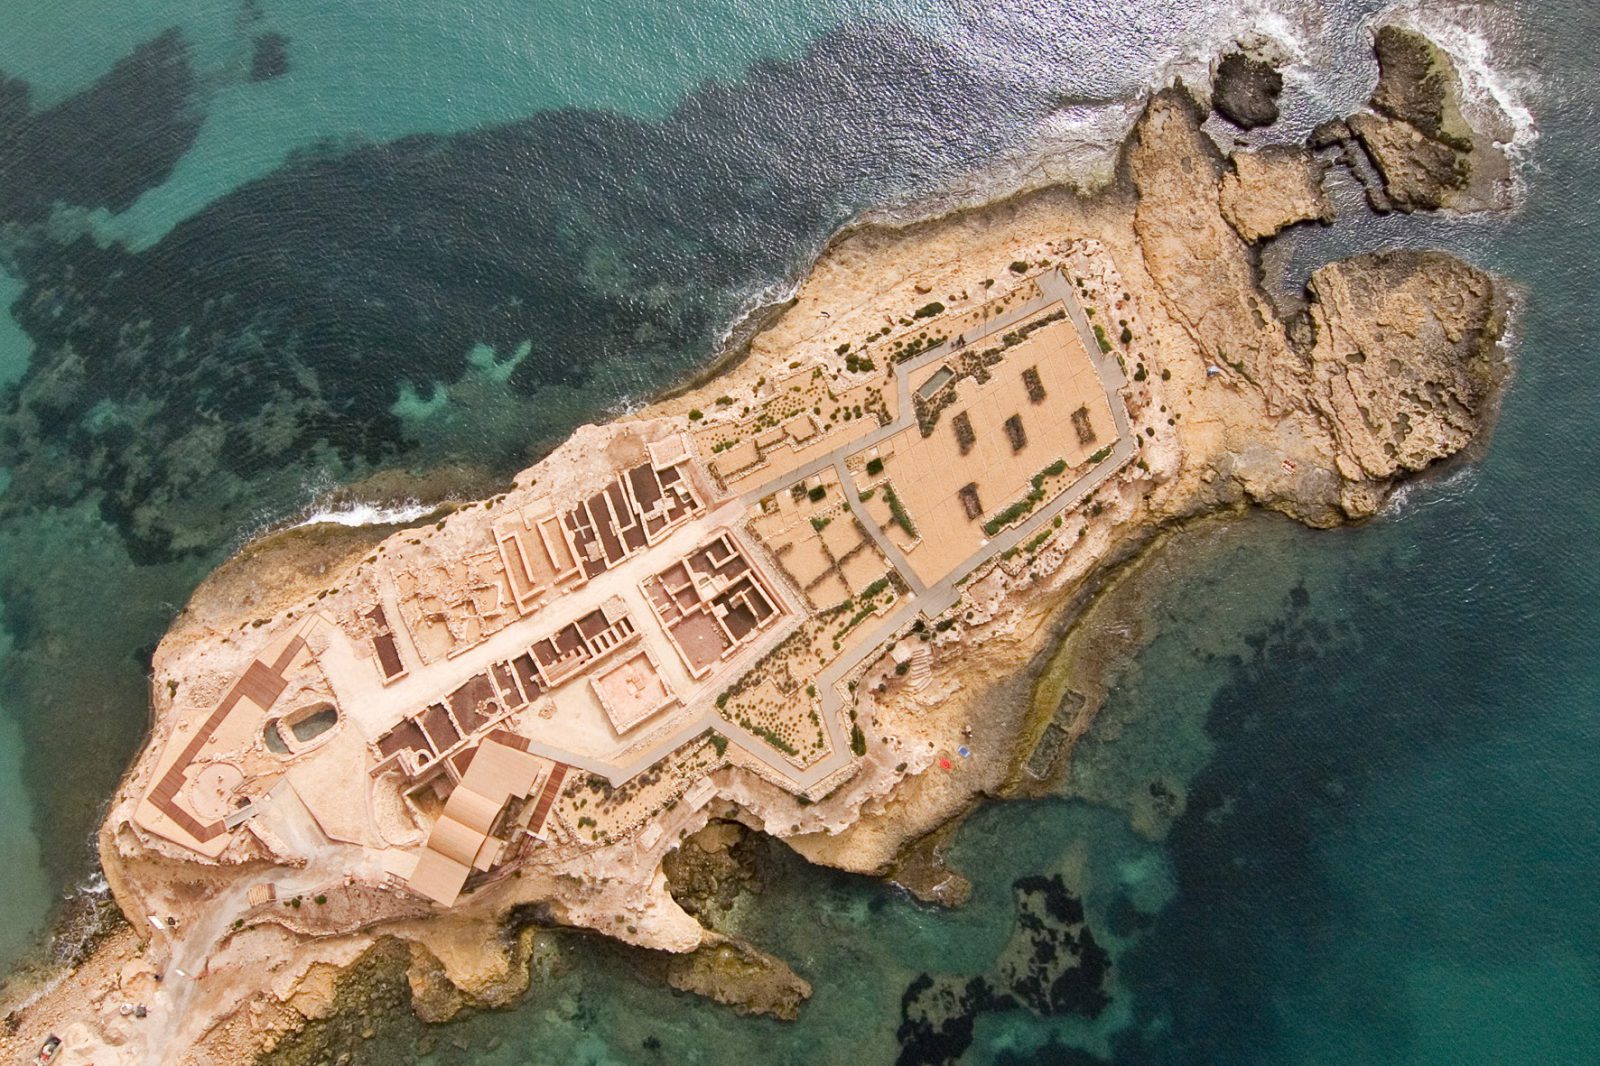 Patrimonio histórico-arqueológico mediterráneo como recurso cultural